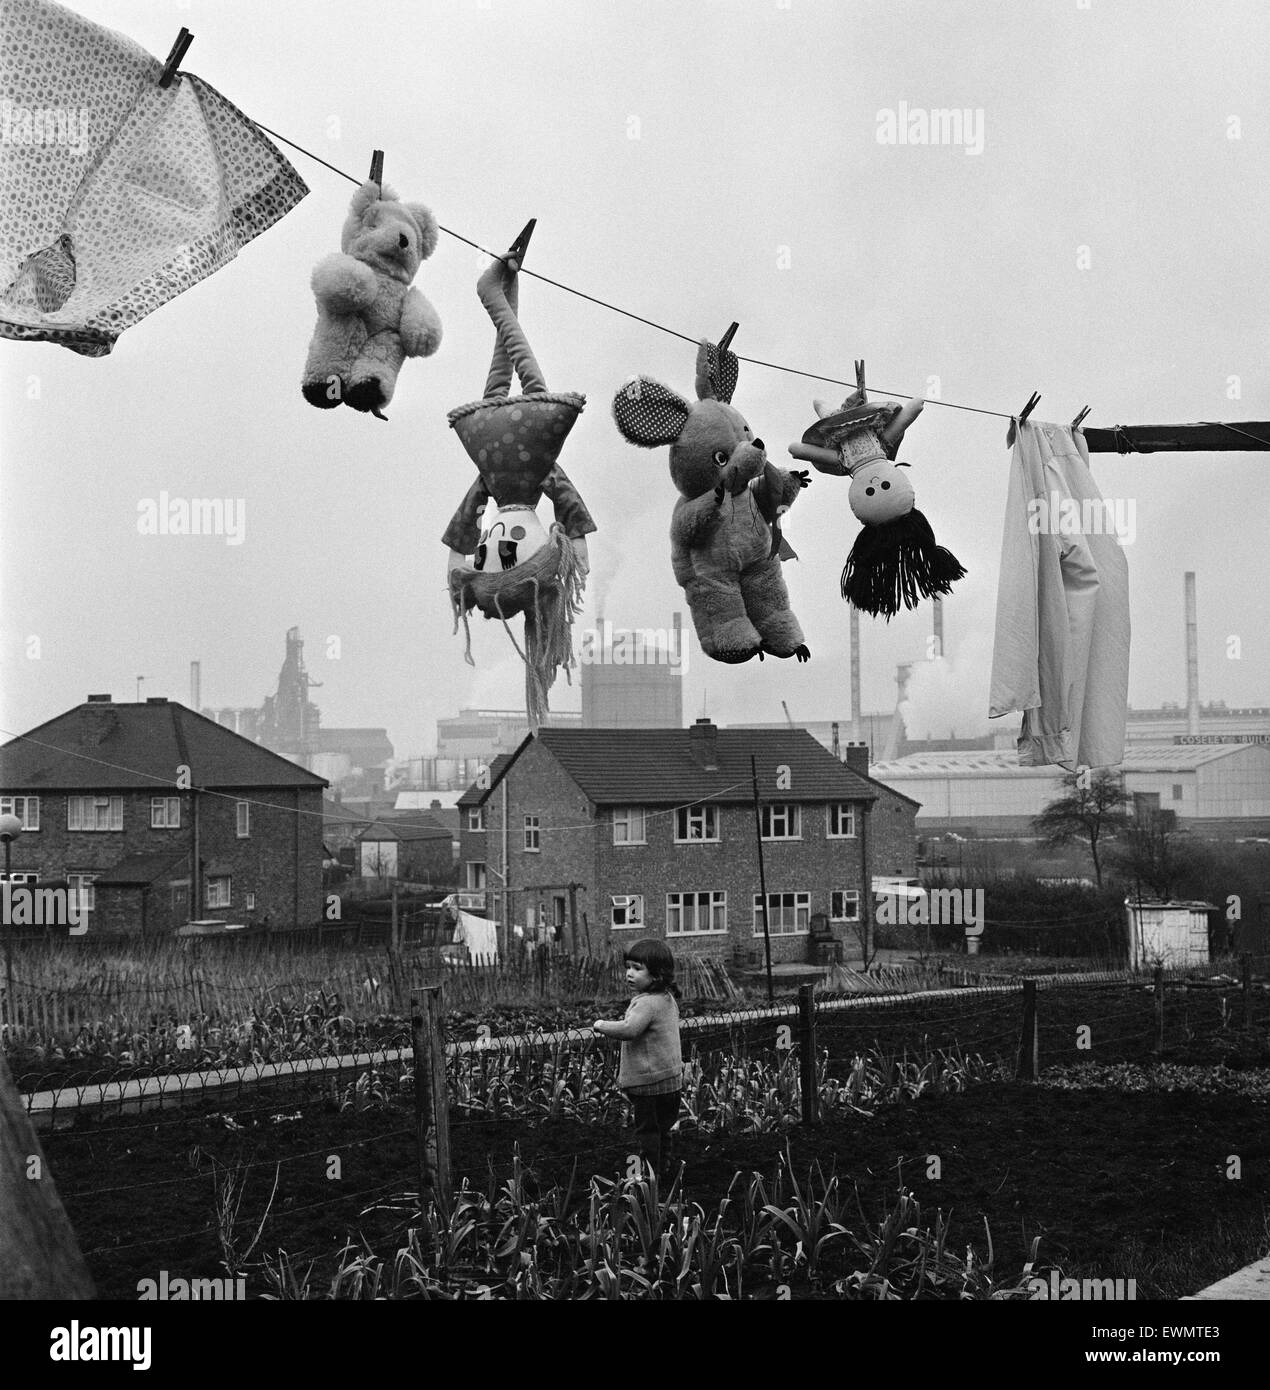 Debido al enorme número de Chimeneas de fábrica que rodean la ciudad de Coseley, en la región de West Midlands, las líneas de lavado son raramente vacío - incluso juguetes requieren una esponja frecuente hacia abajo. El 5 de marzo de 1971. Foto de stock